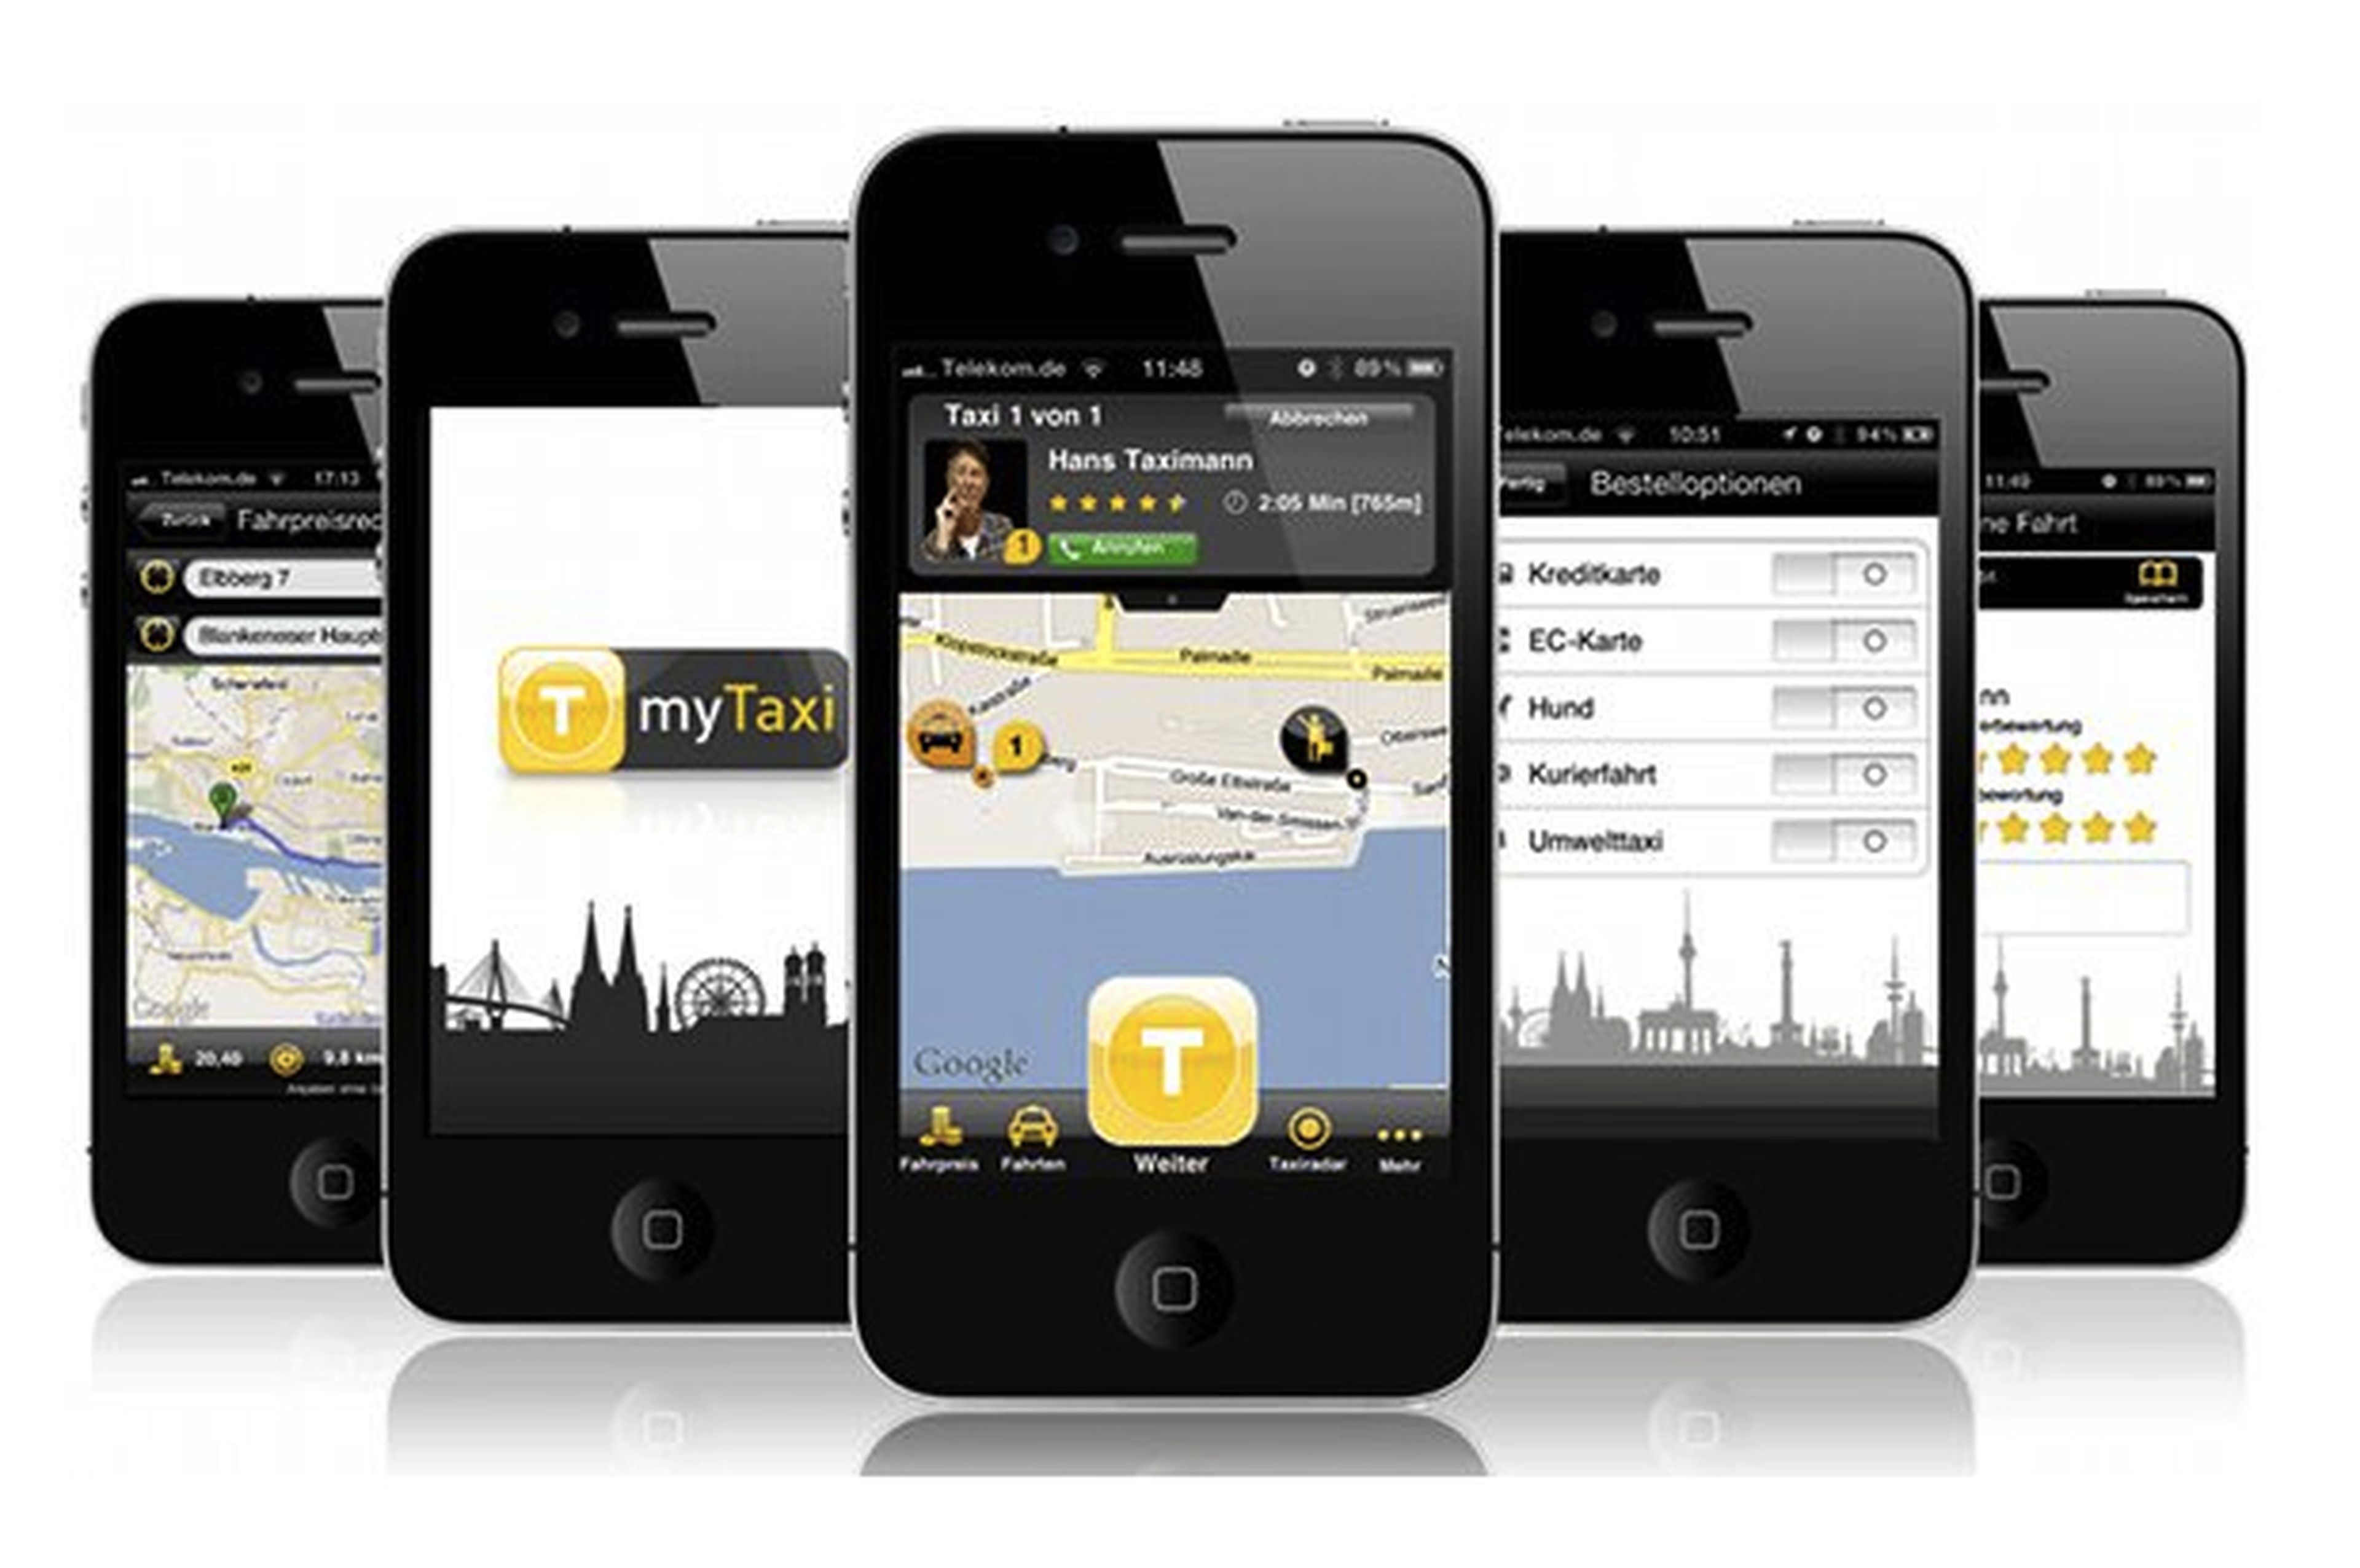 Pide un taxi desde tu smartphone con la app MyTaxi